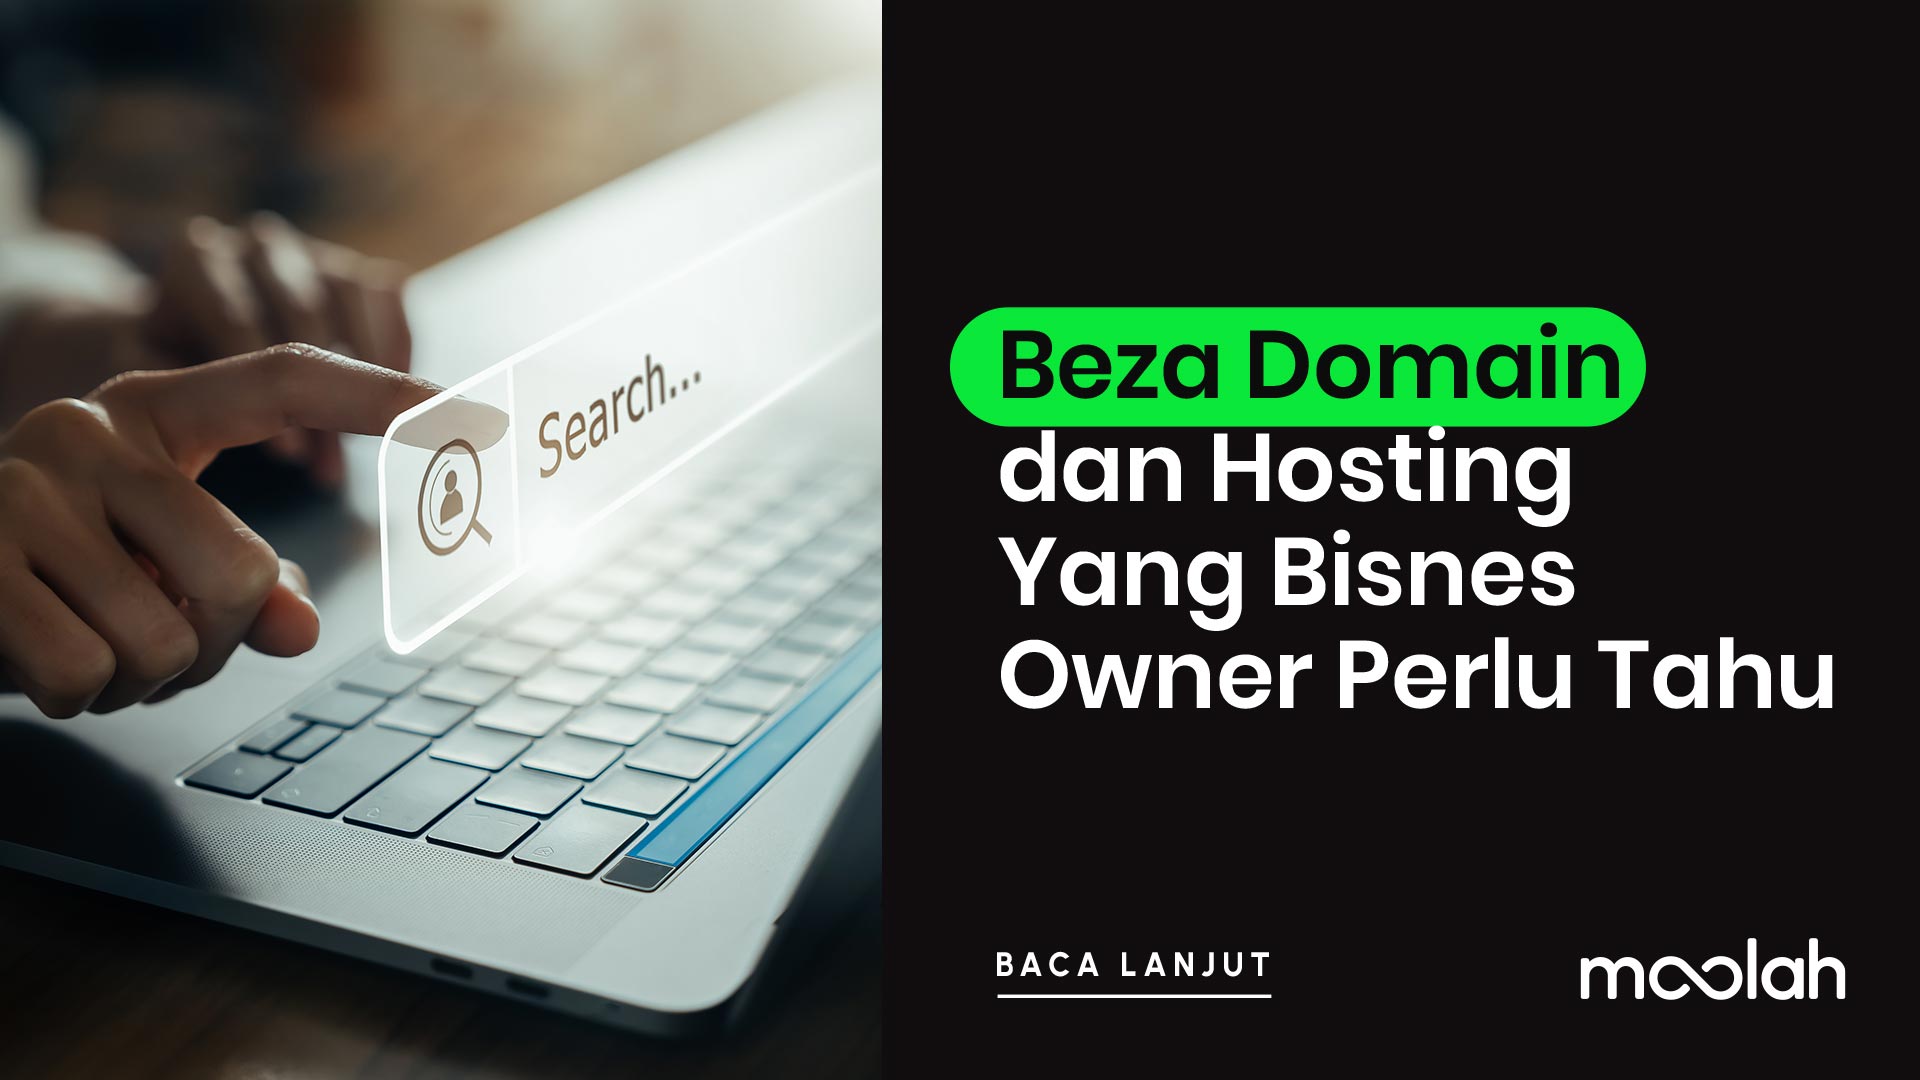 Beza Domain dan Hosting